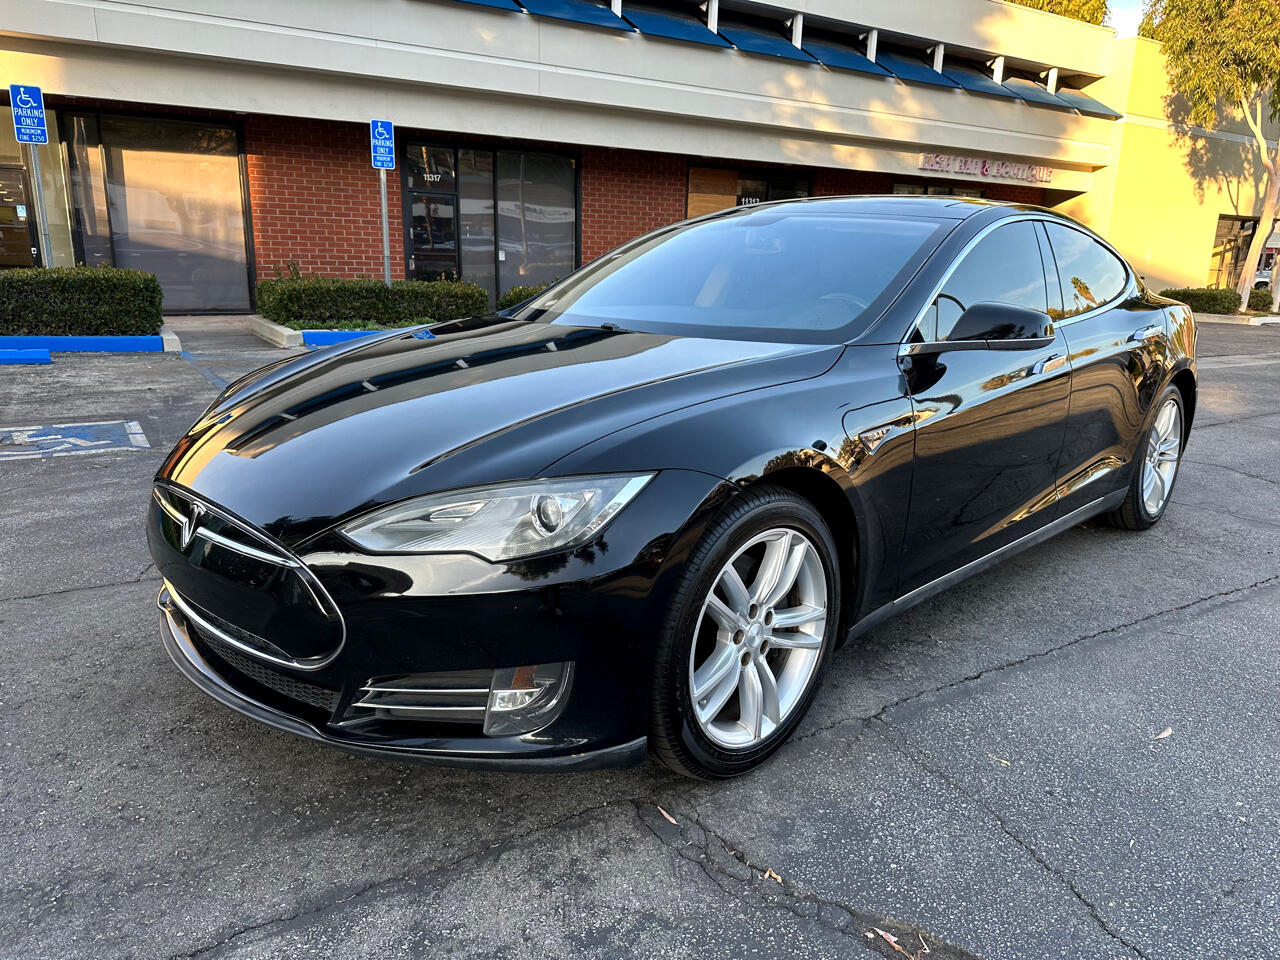 Tesla Model S 85 2013